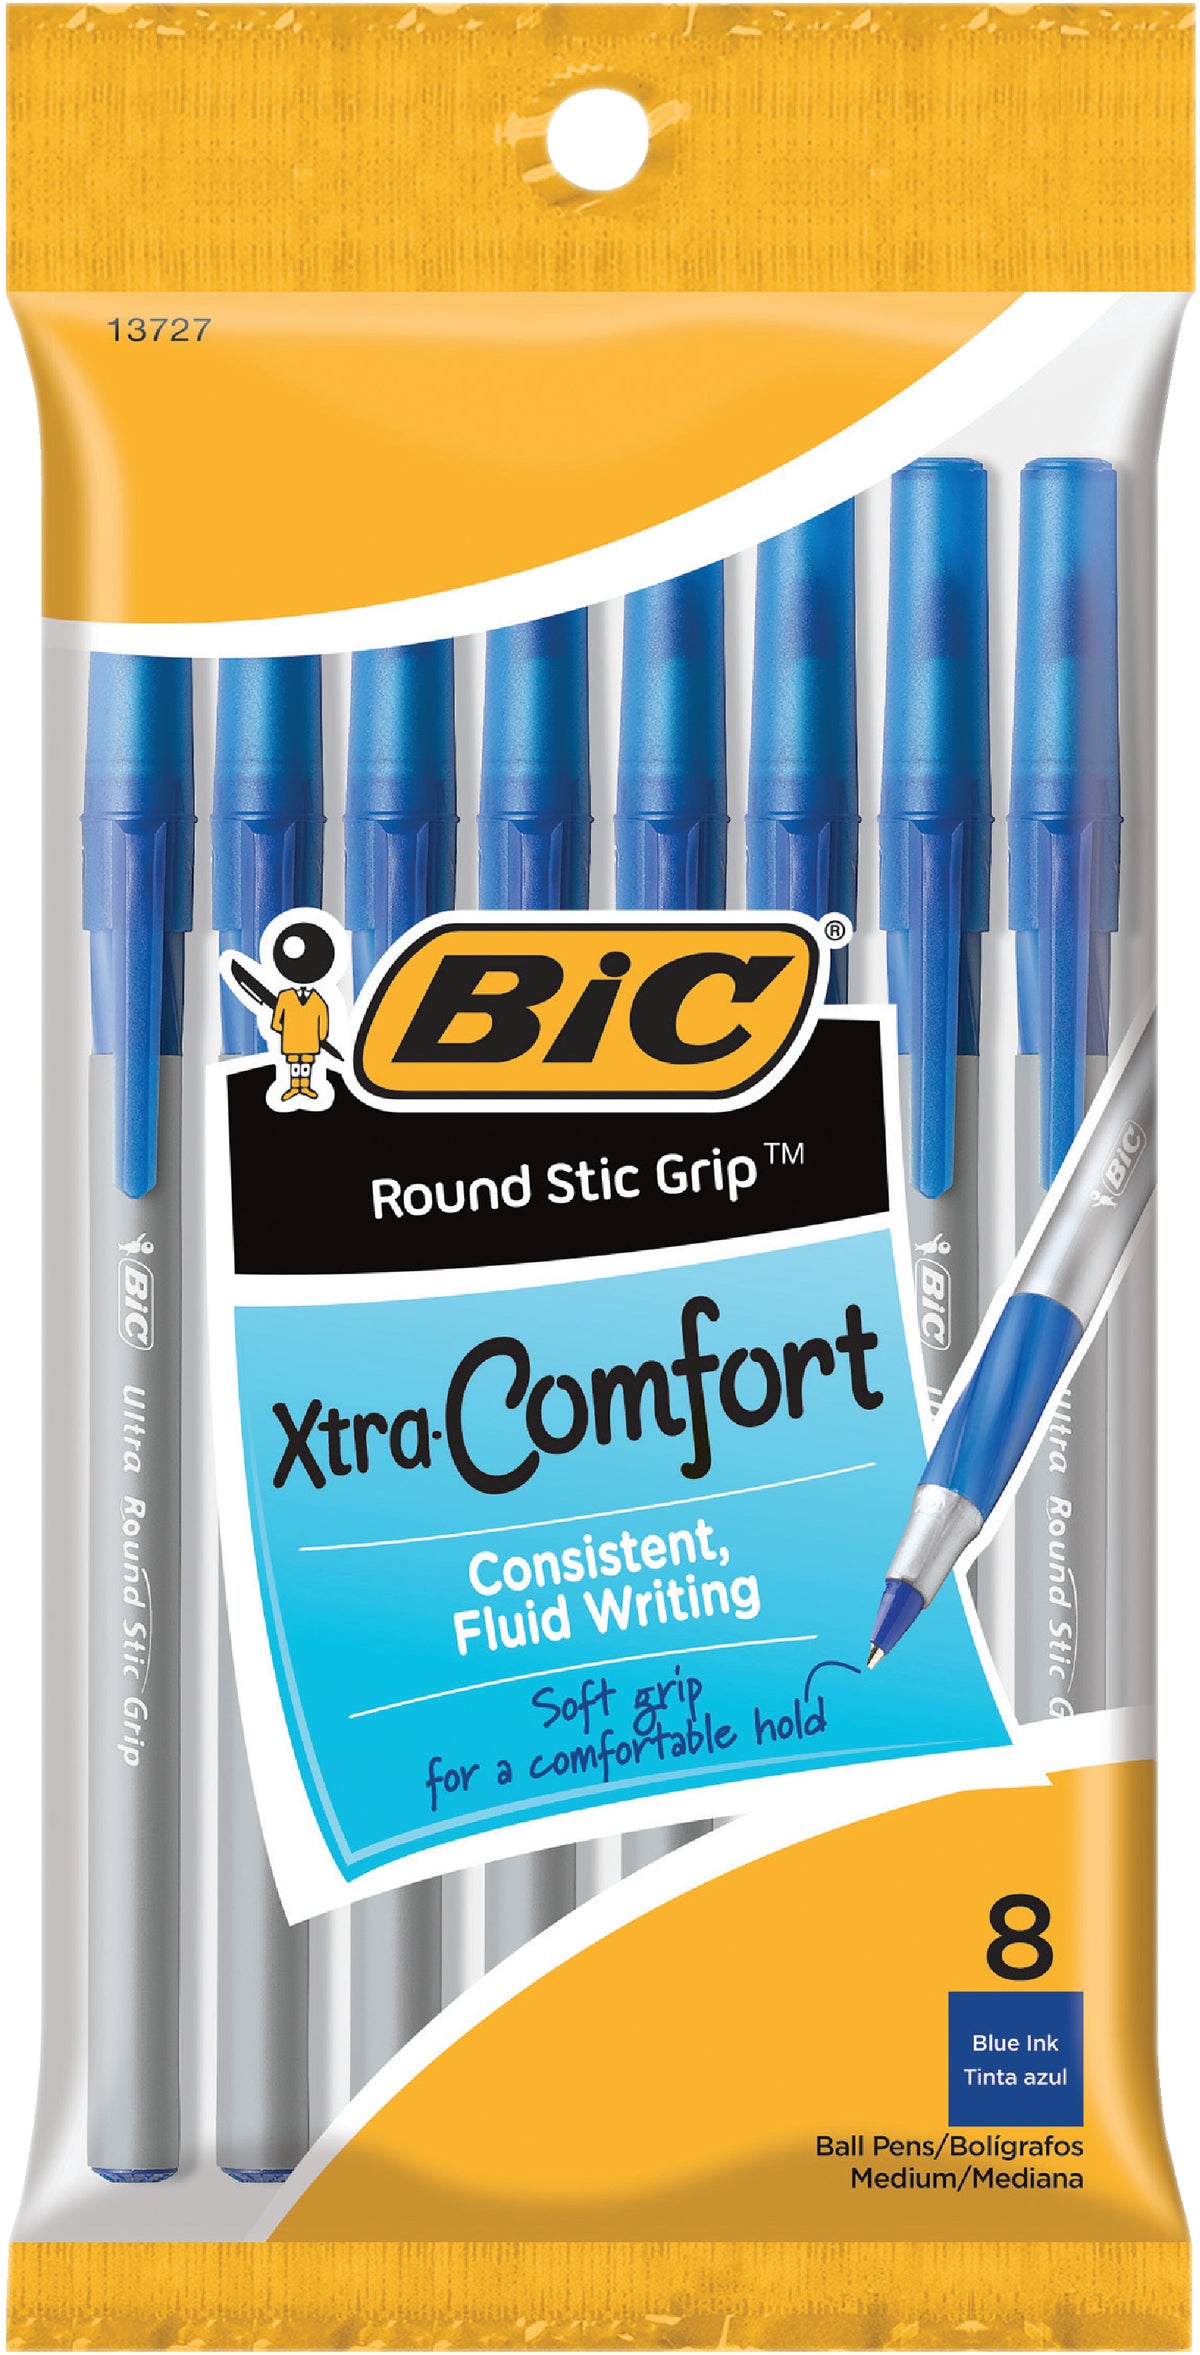 Civiel hoofdkussen Proberen Buy Bic Round Stic Grip Pen Medium Point, Blue